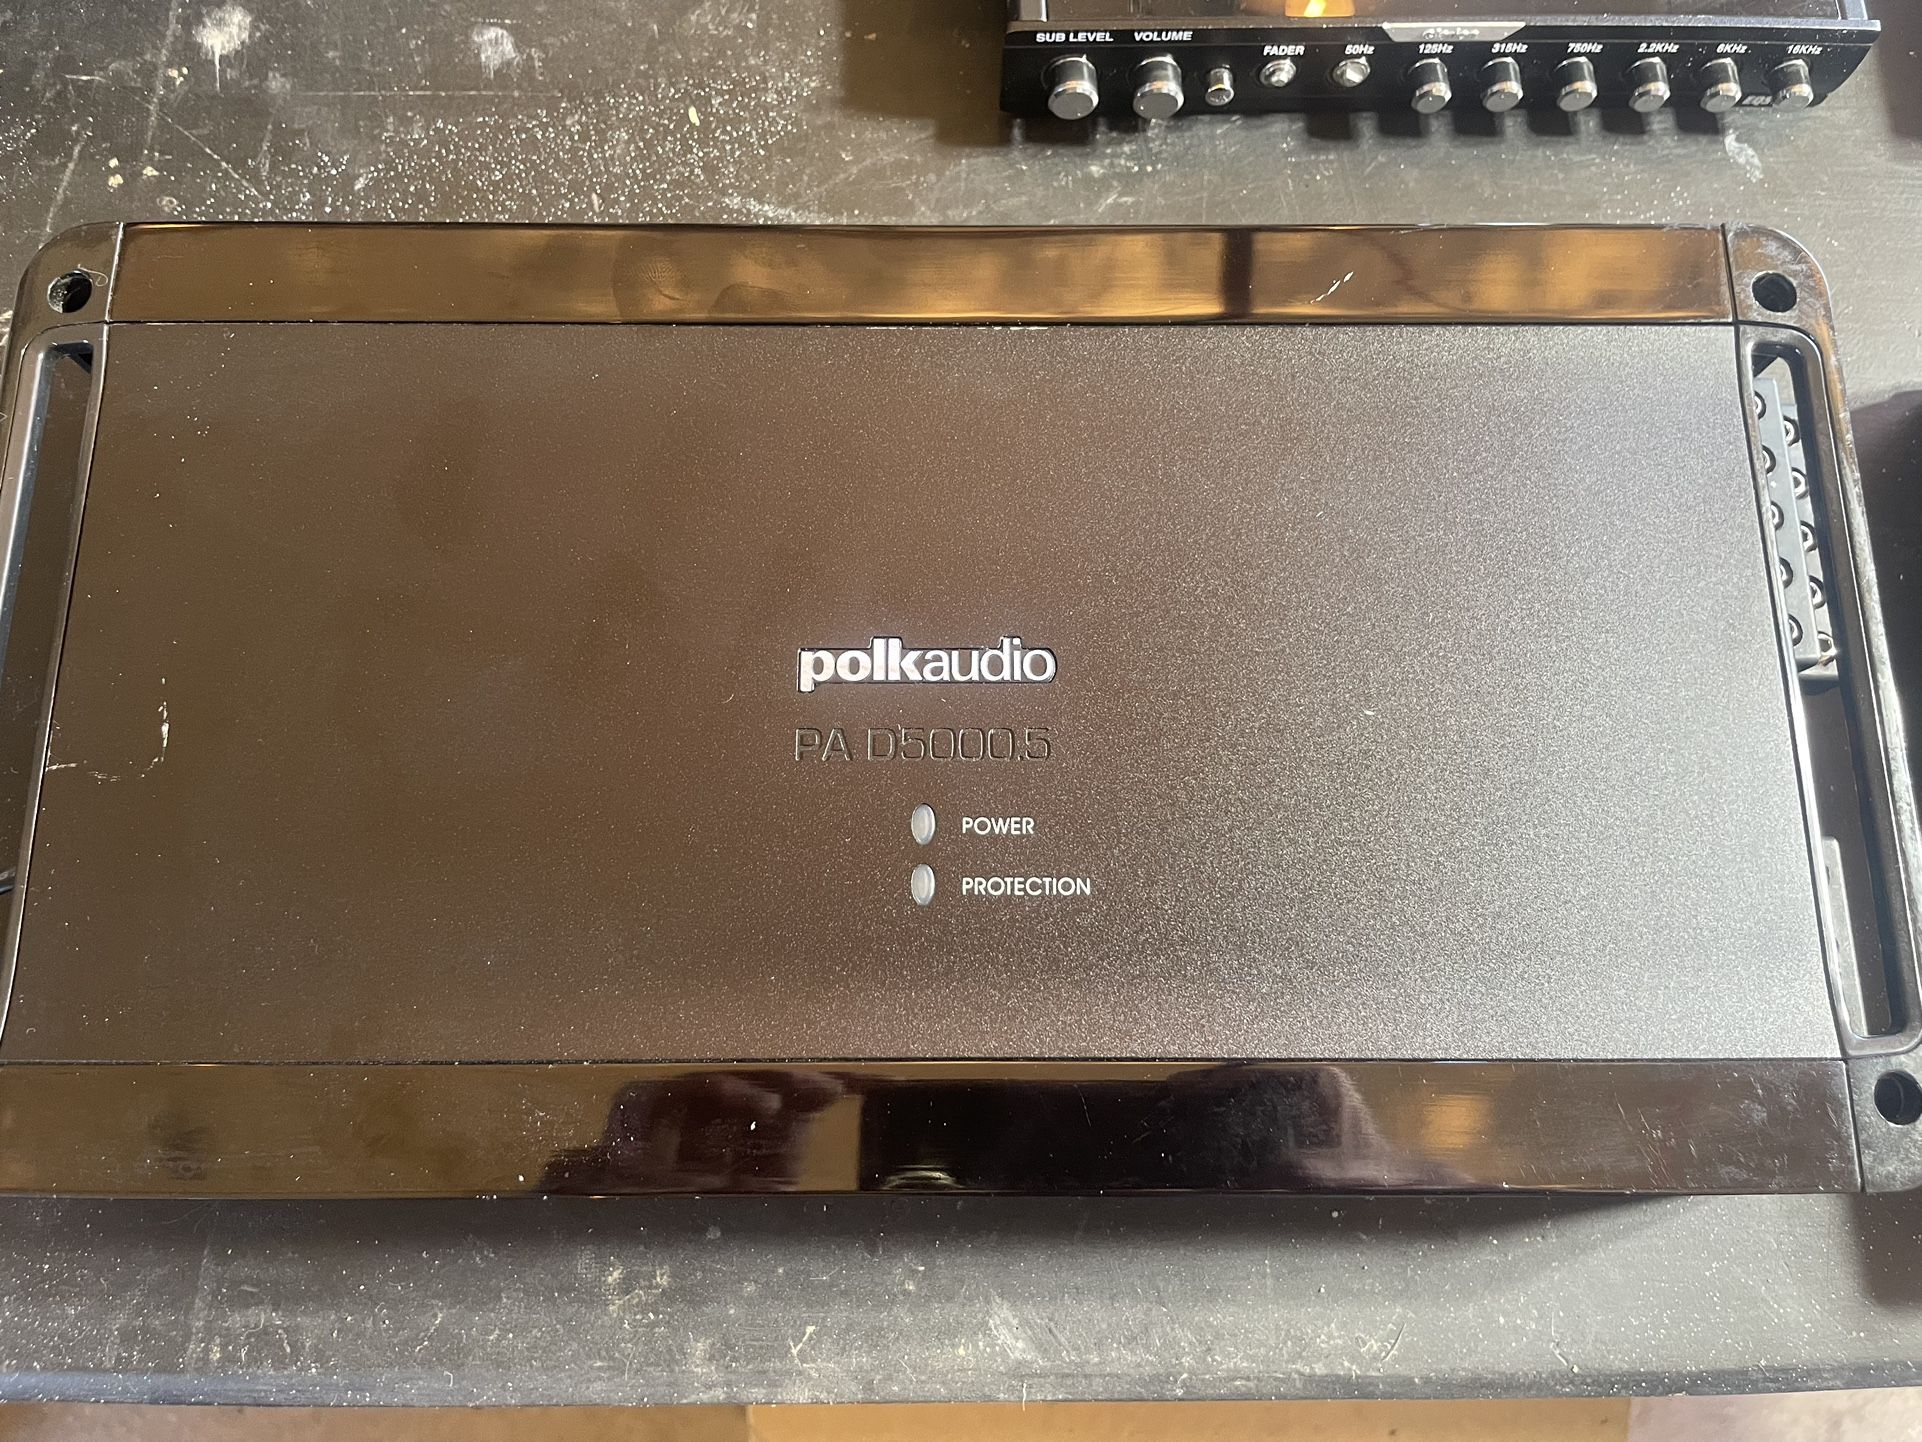 Polk Audio Pa D5000.5 Amplifier 